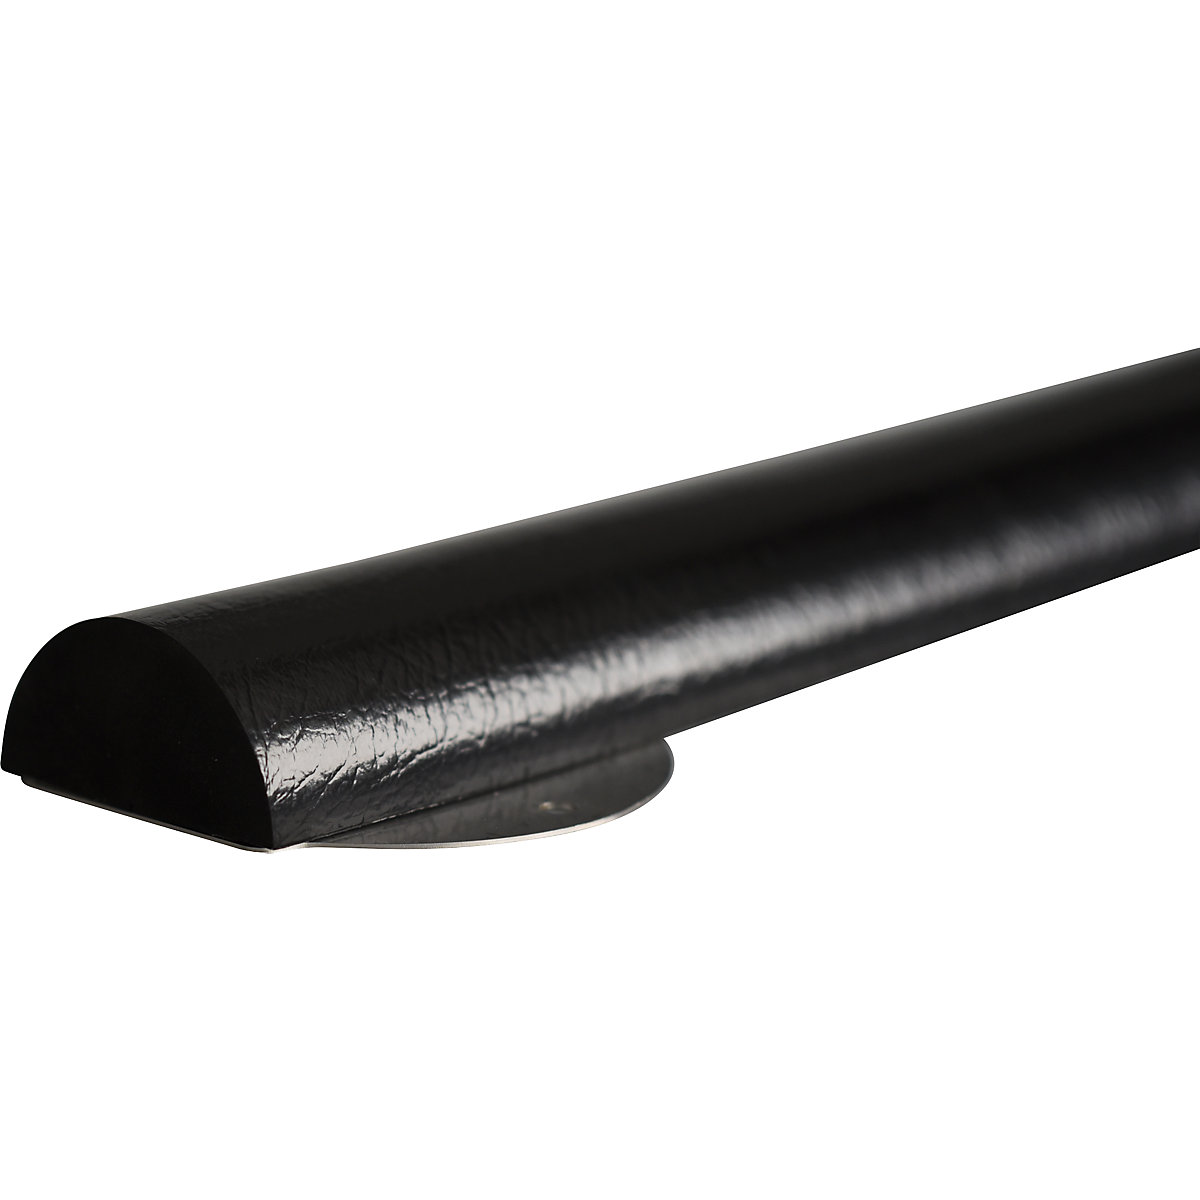 Protecție pentru suprafețe Knuffi® cu șină de montaj – SHG, tip C+, bucată de 1 m, negru